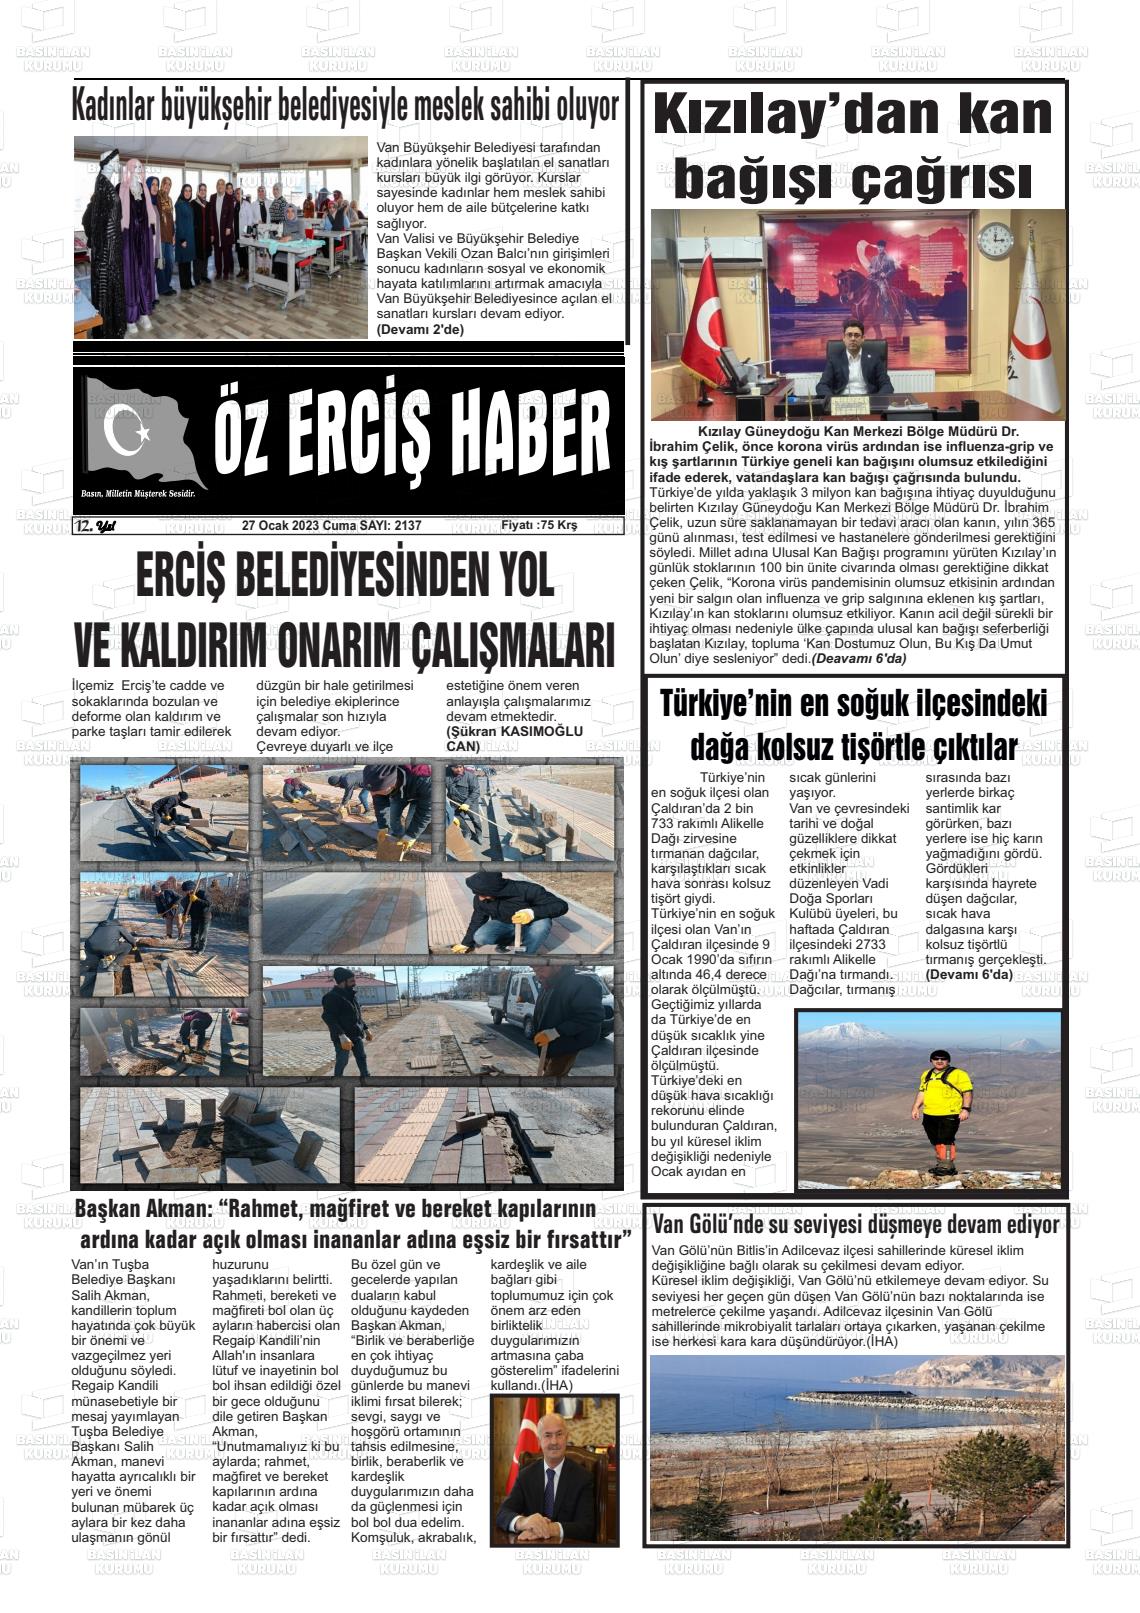 27 Ocak 2023 Öz Erciş Haber Gazete Manşeti